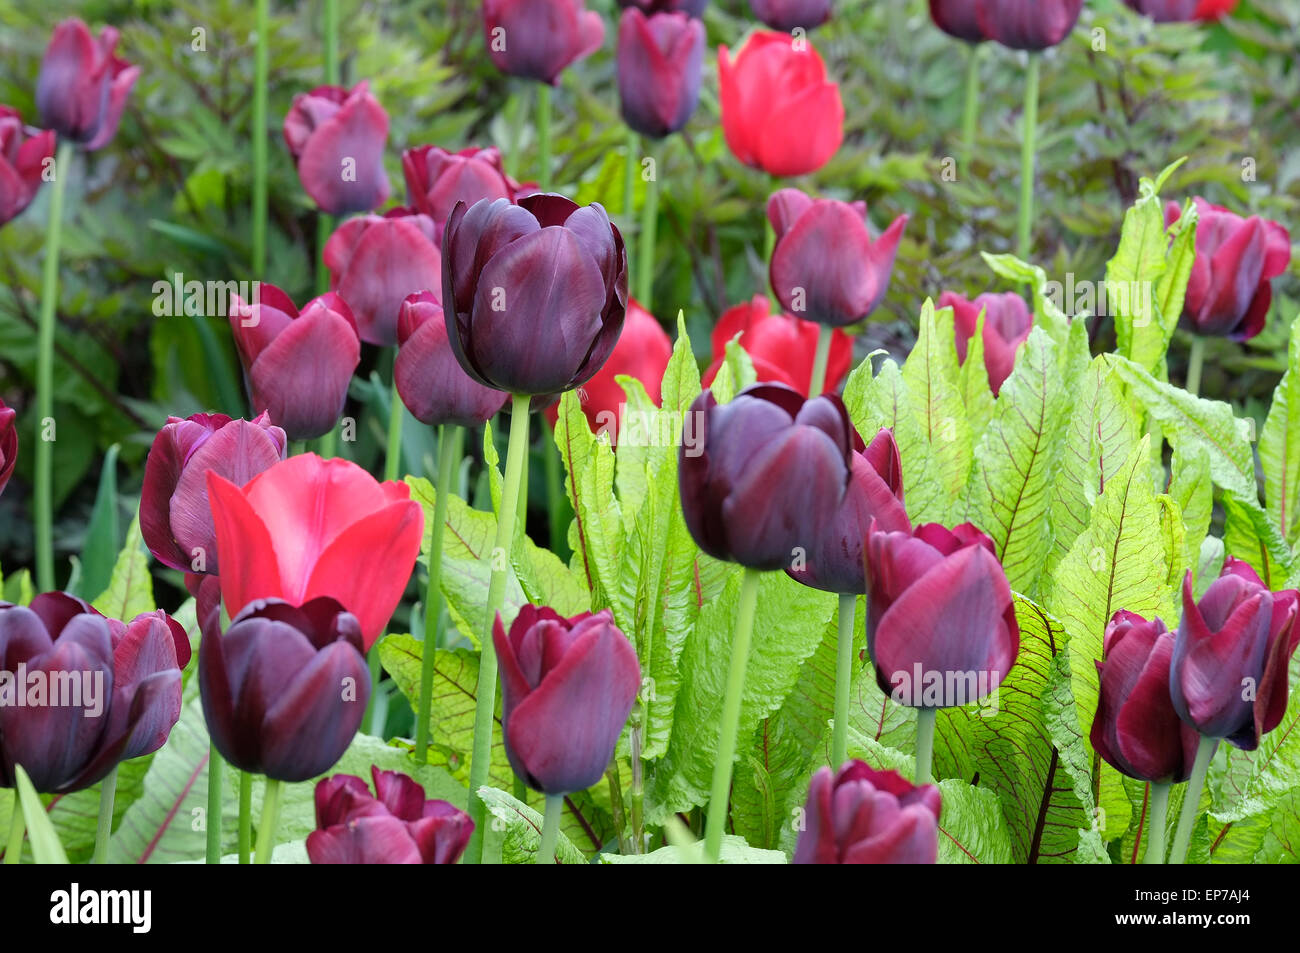 Queen Of The Night Tulips In Garden Stock Photo Alamy